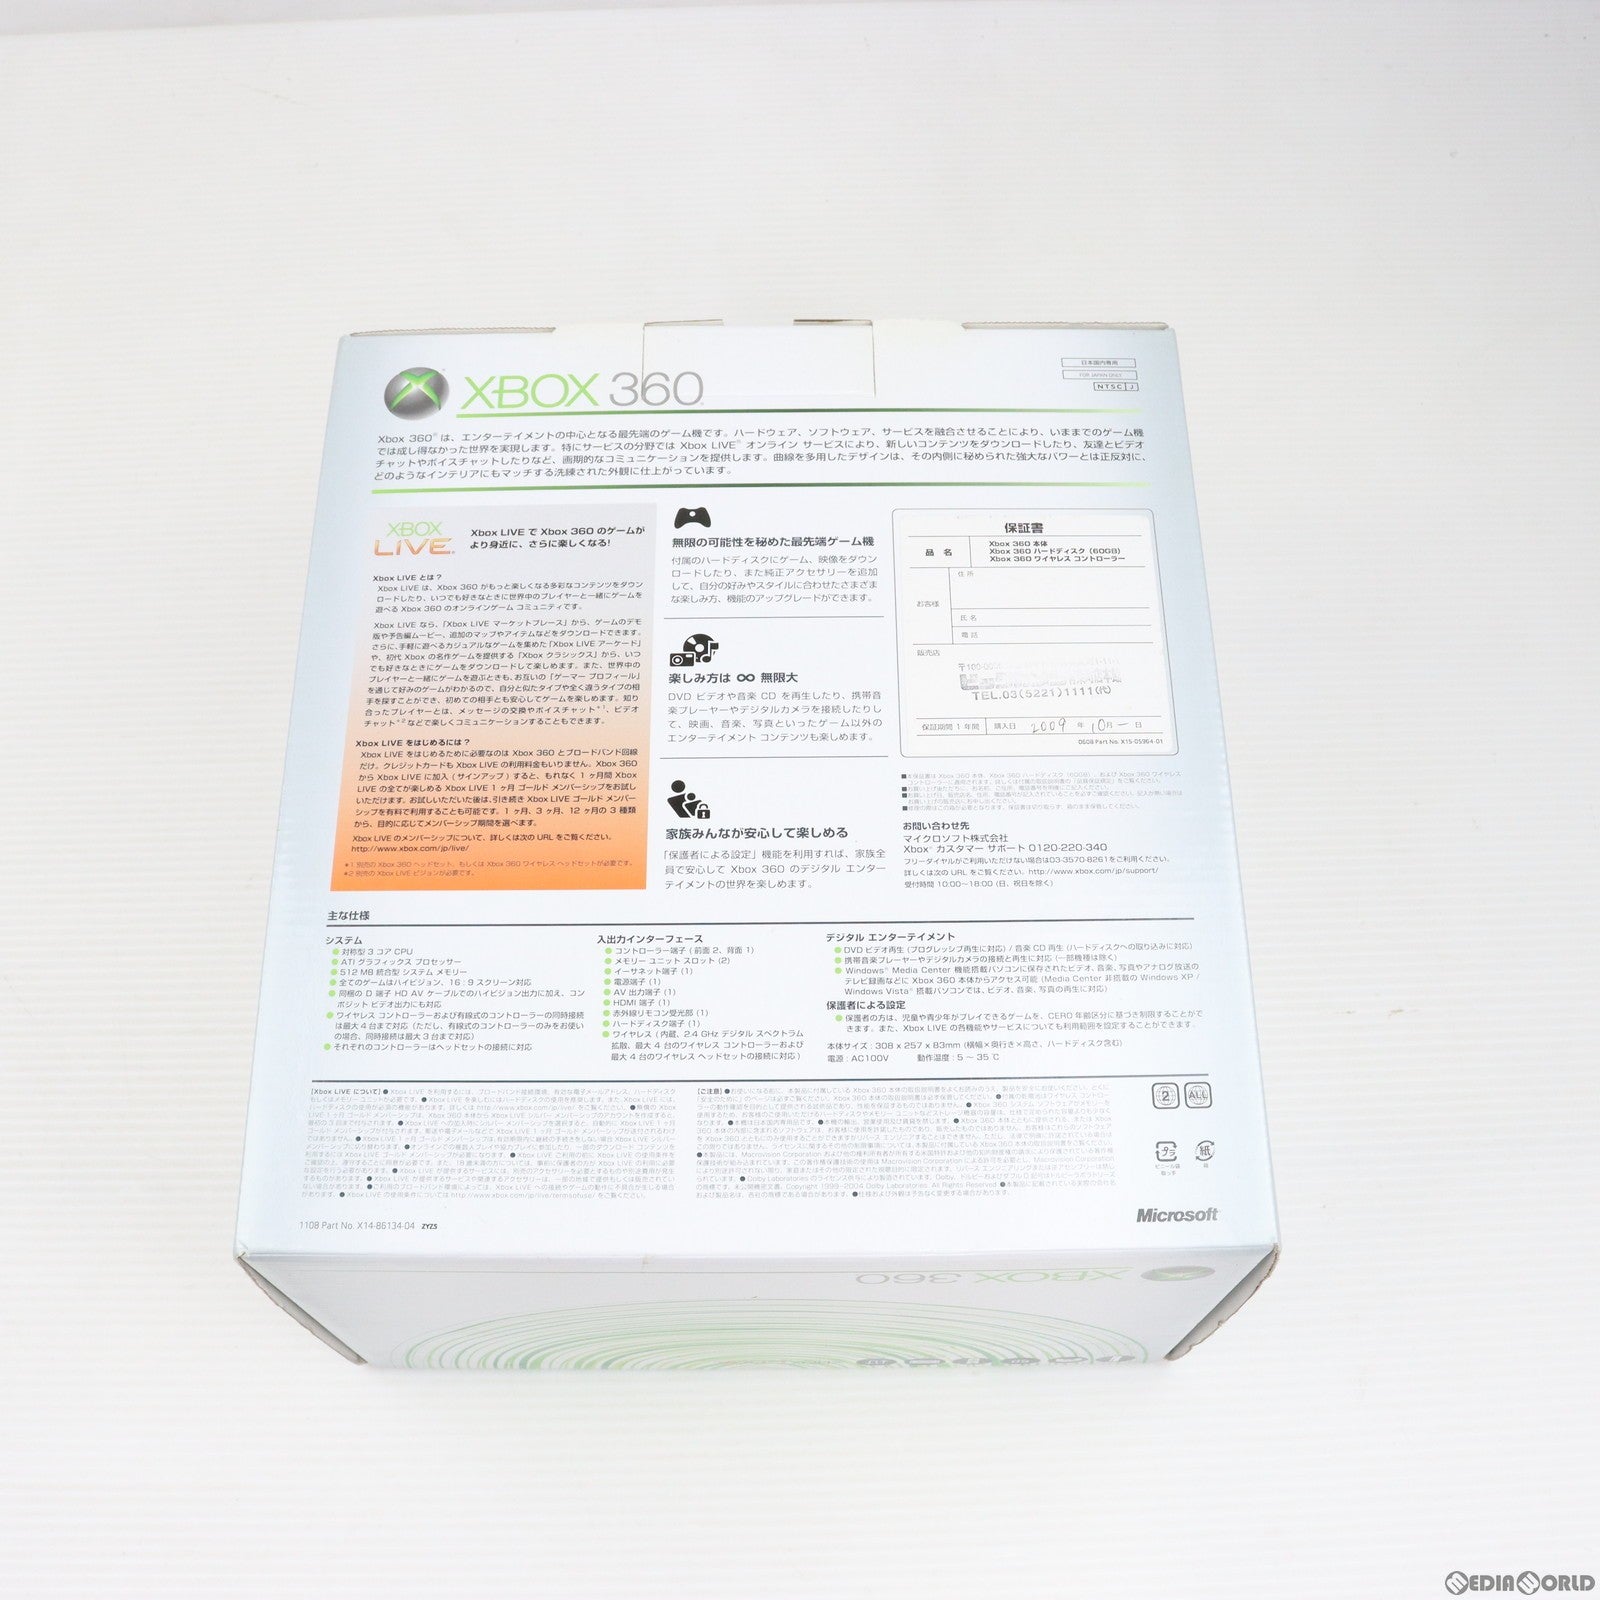 【中古即納】[本体][Xbox360]Xbox 360 スタンダードモデル 60GB HDMI端子搭載型(B4J-00184)(20080911)